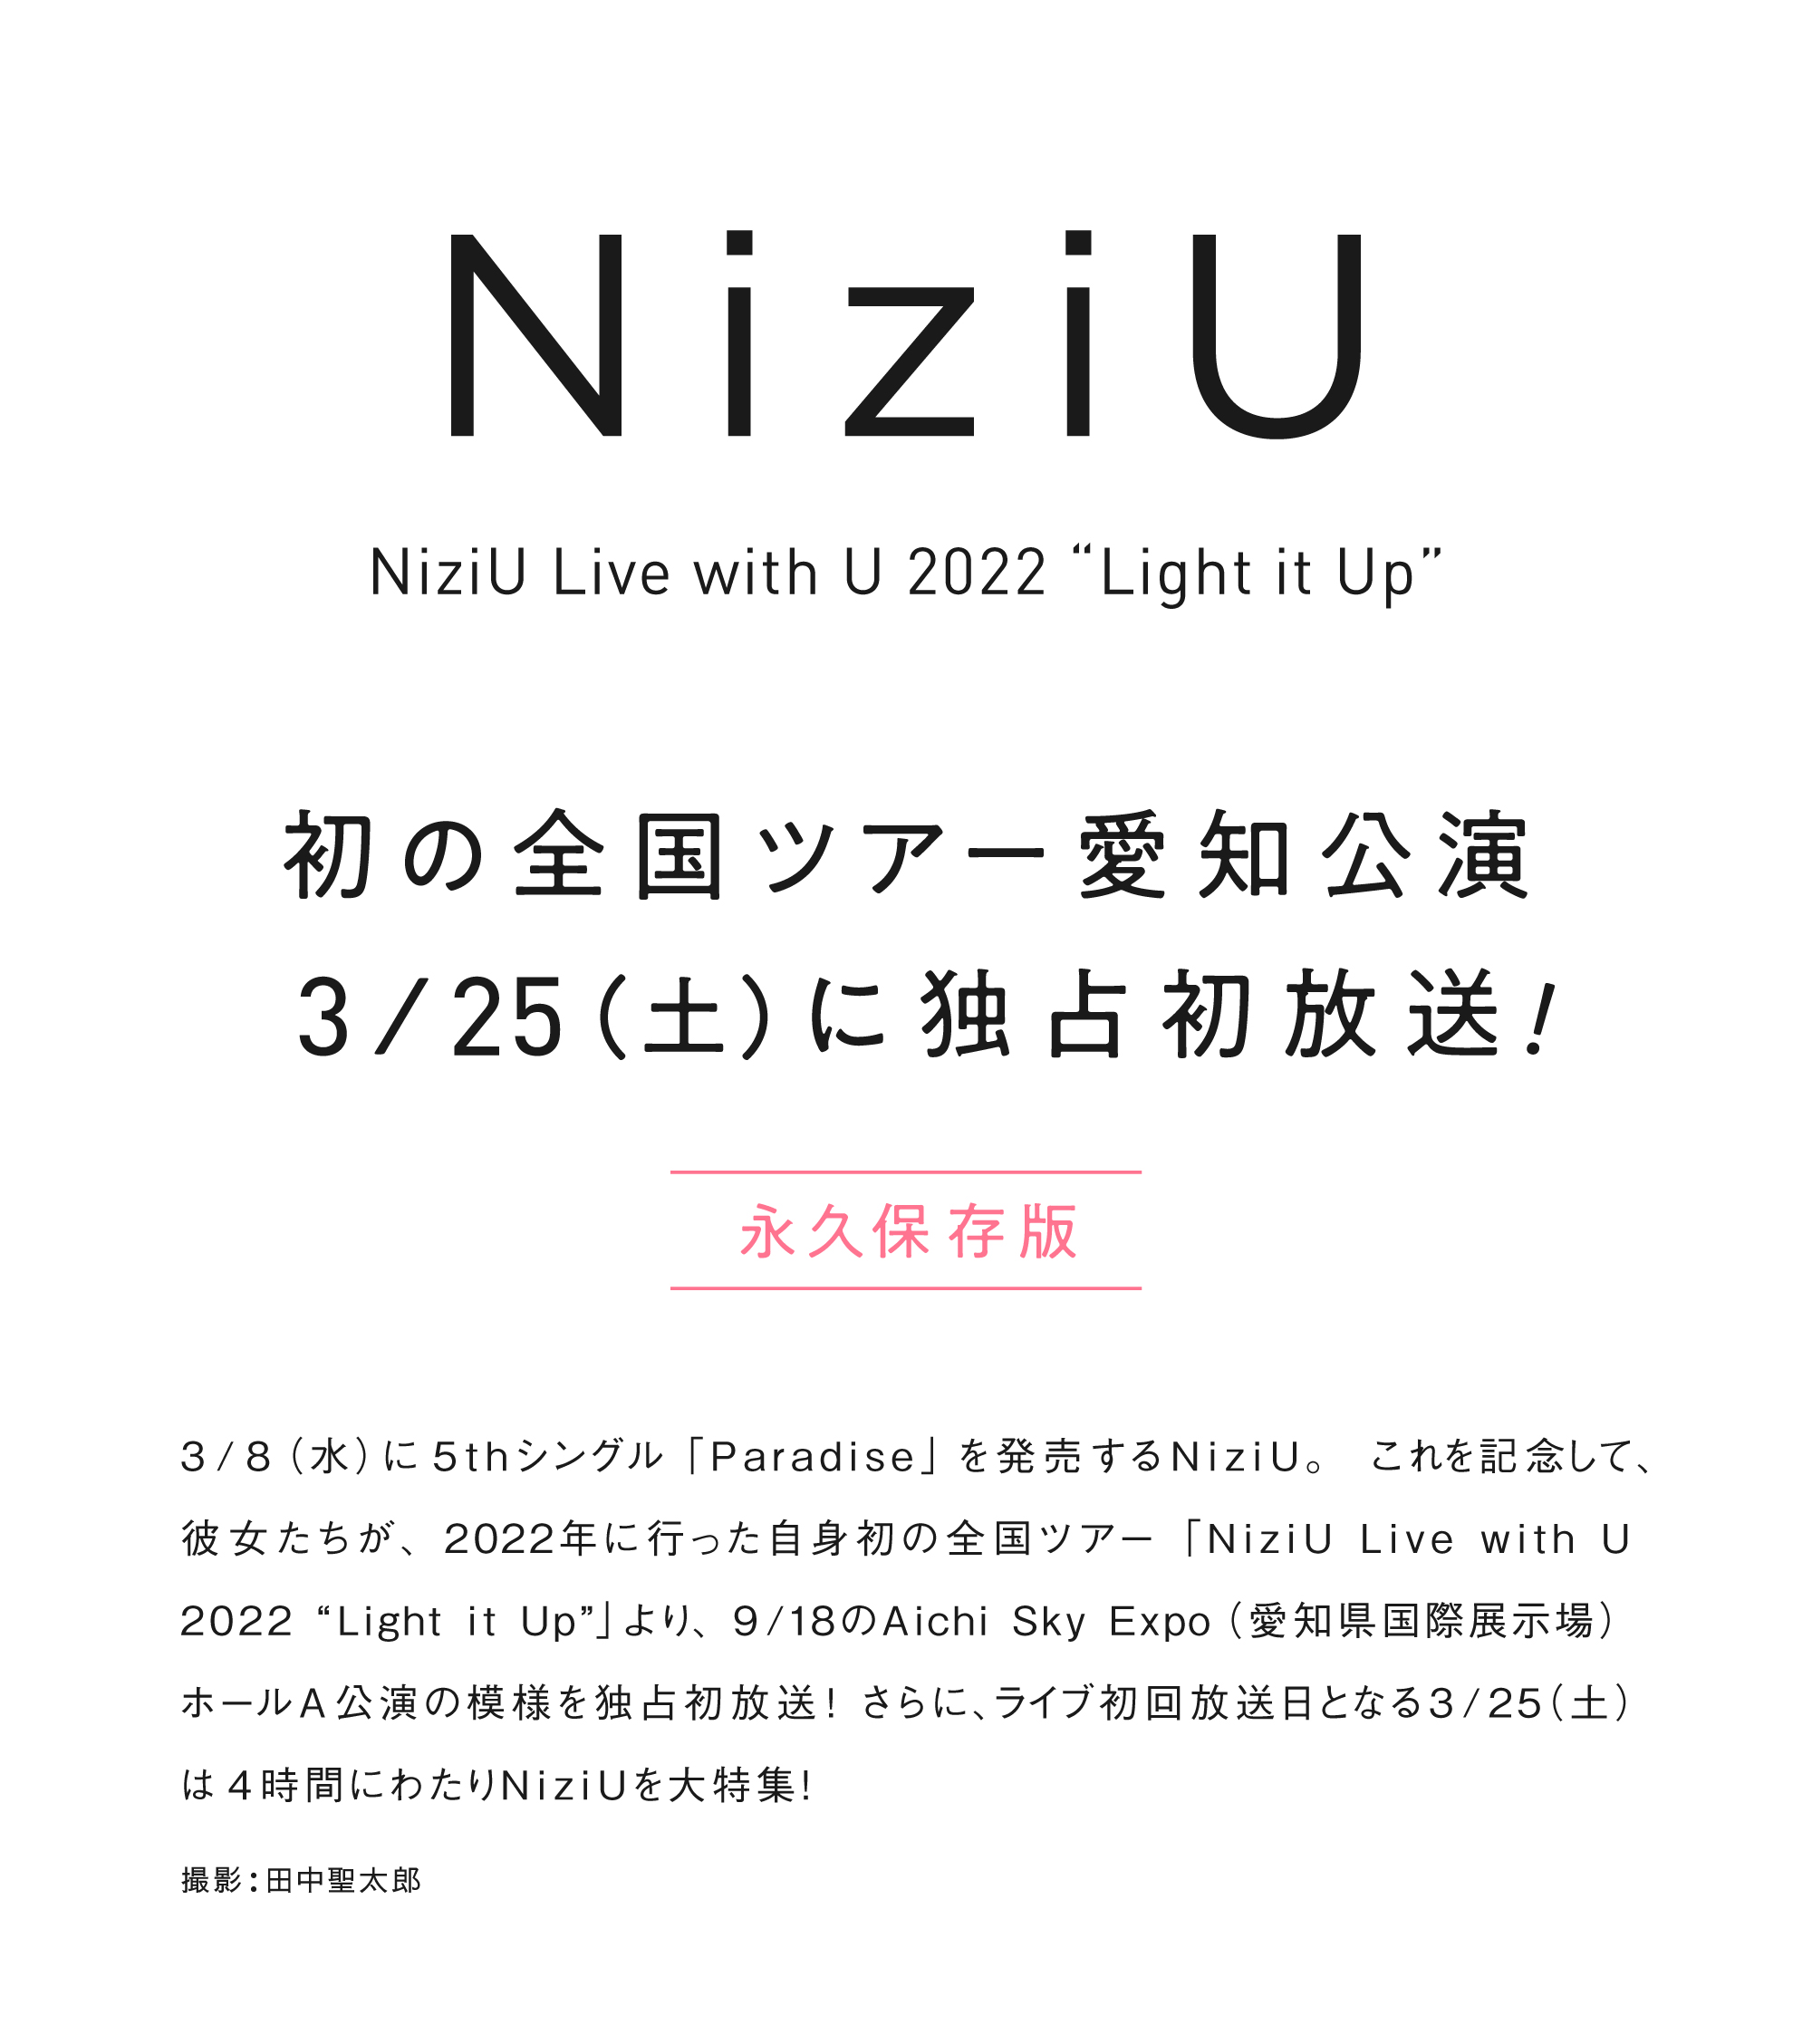 3/8(水)に5thシングル「Paradise」を発売するNiziU。これを記念して、彼女たちが、2022年に行った自身初の全国ツアー「NiziU Live with U 2022 “Light it Up”」より、9/18のAichi Sky Expo(愛知県国際展示場) ホールA公演の模様を独占初放送！さらに、ライブ初回放送日となる3/25(土)は4時間にわたりNiziUを大特集！